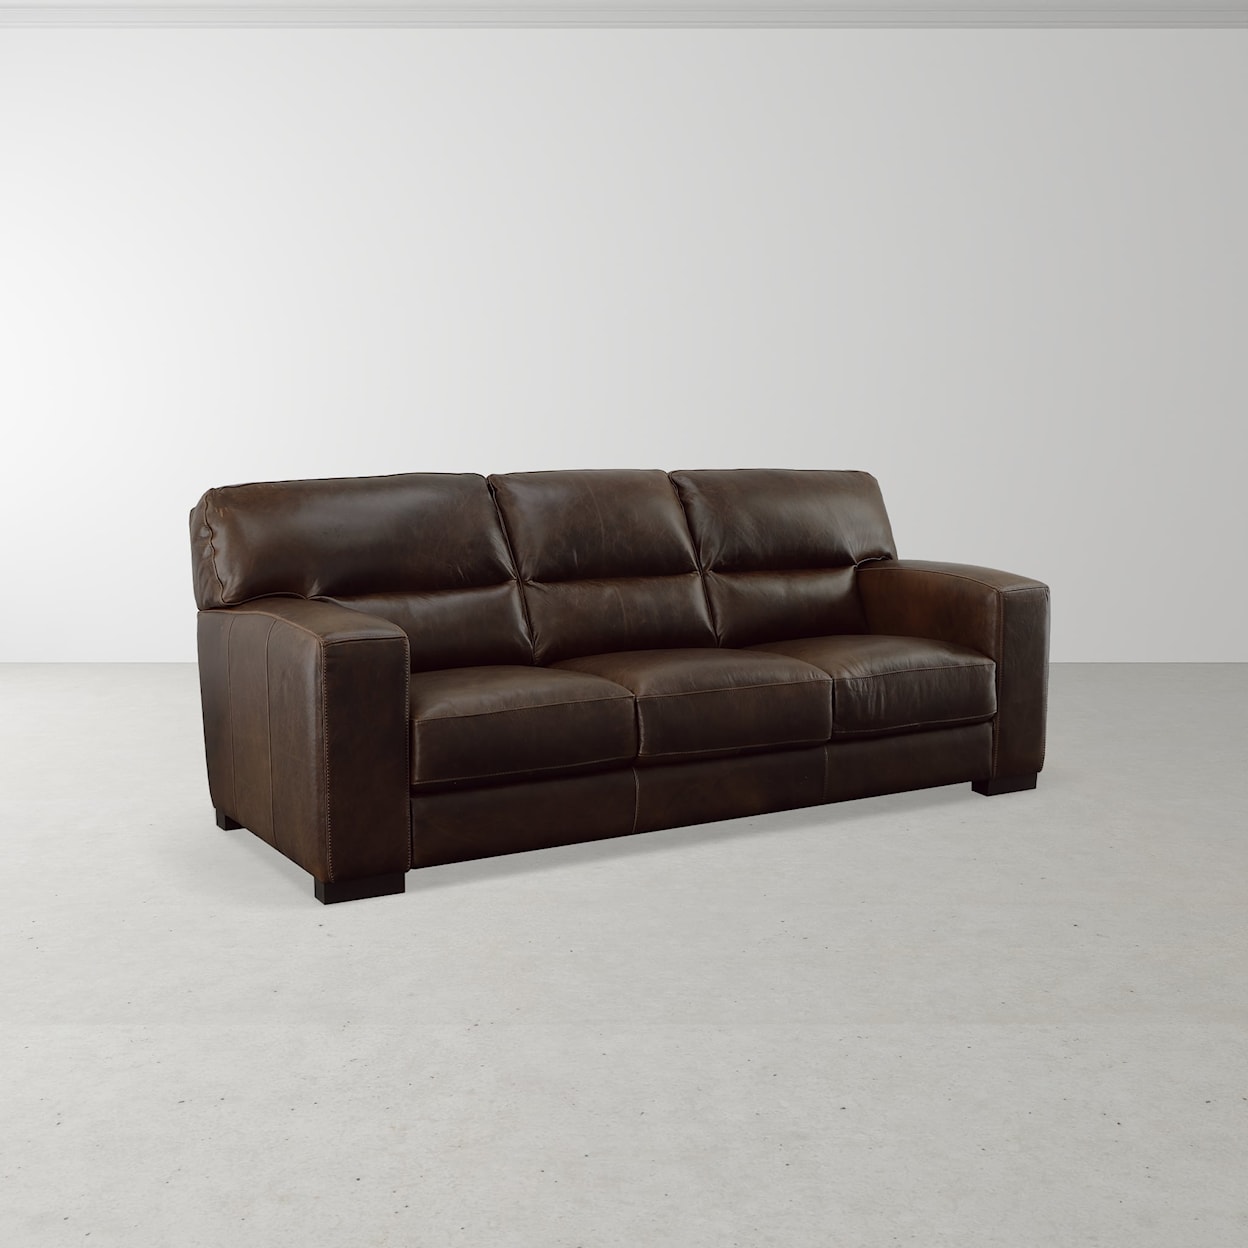 Virginia Furniture Market Premium Leather Brescia Sofa